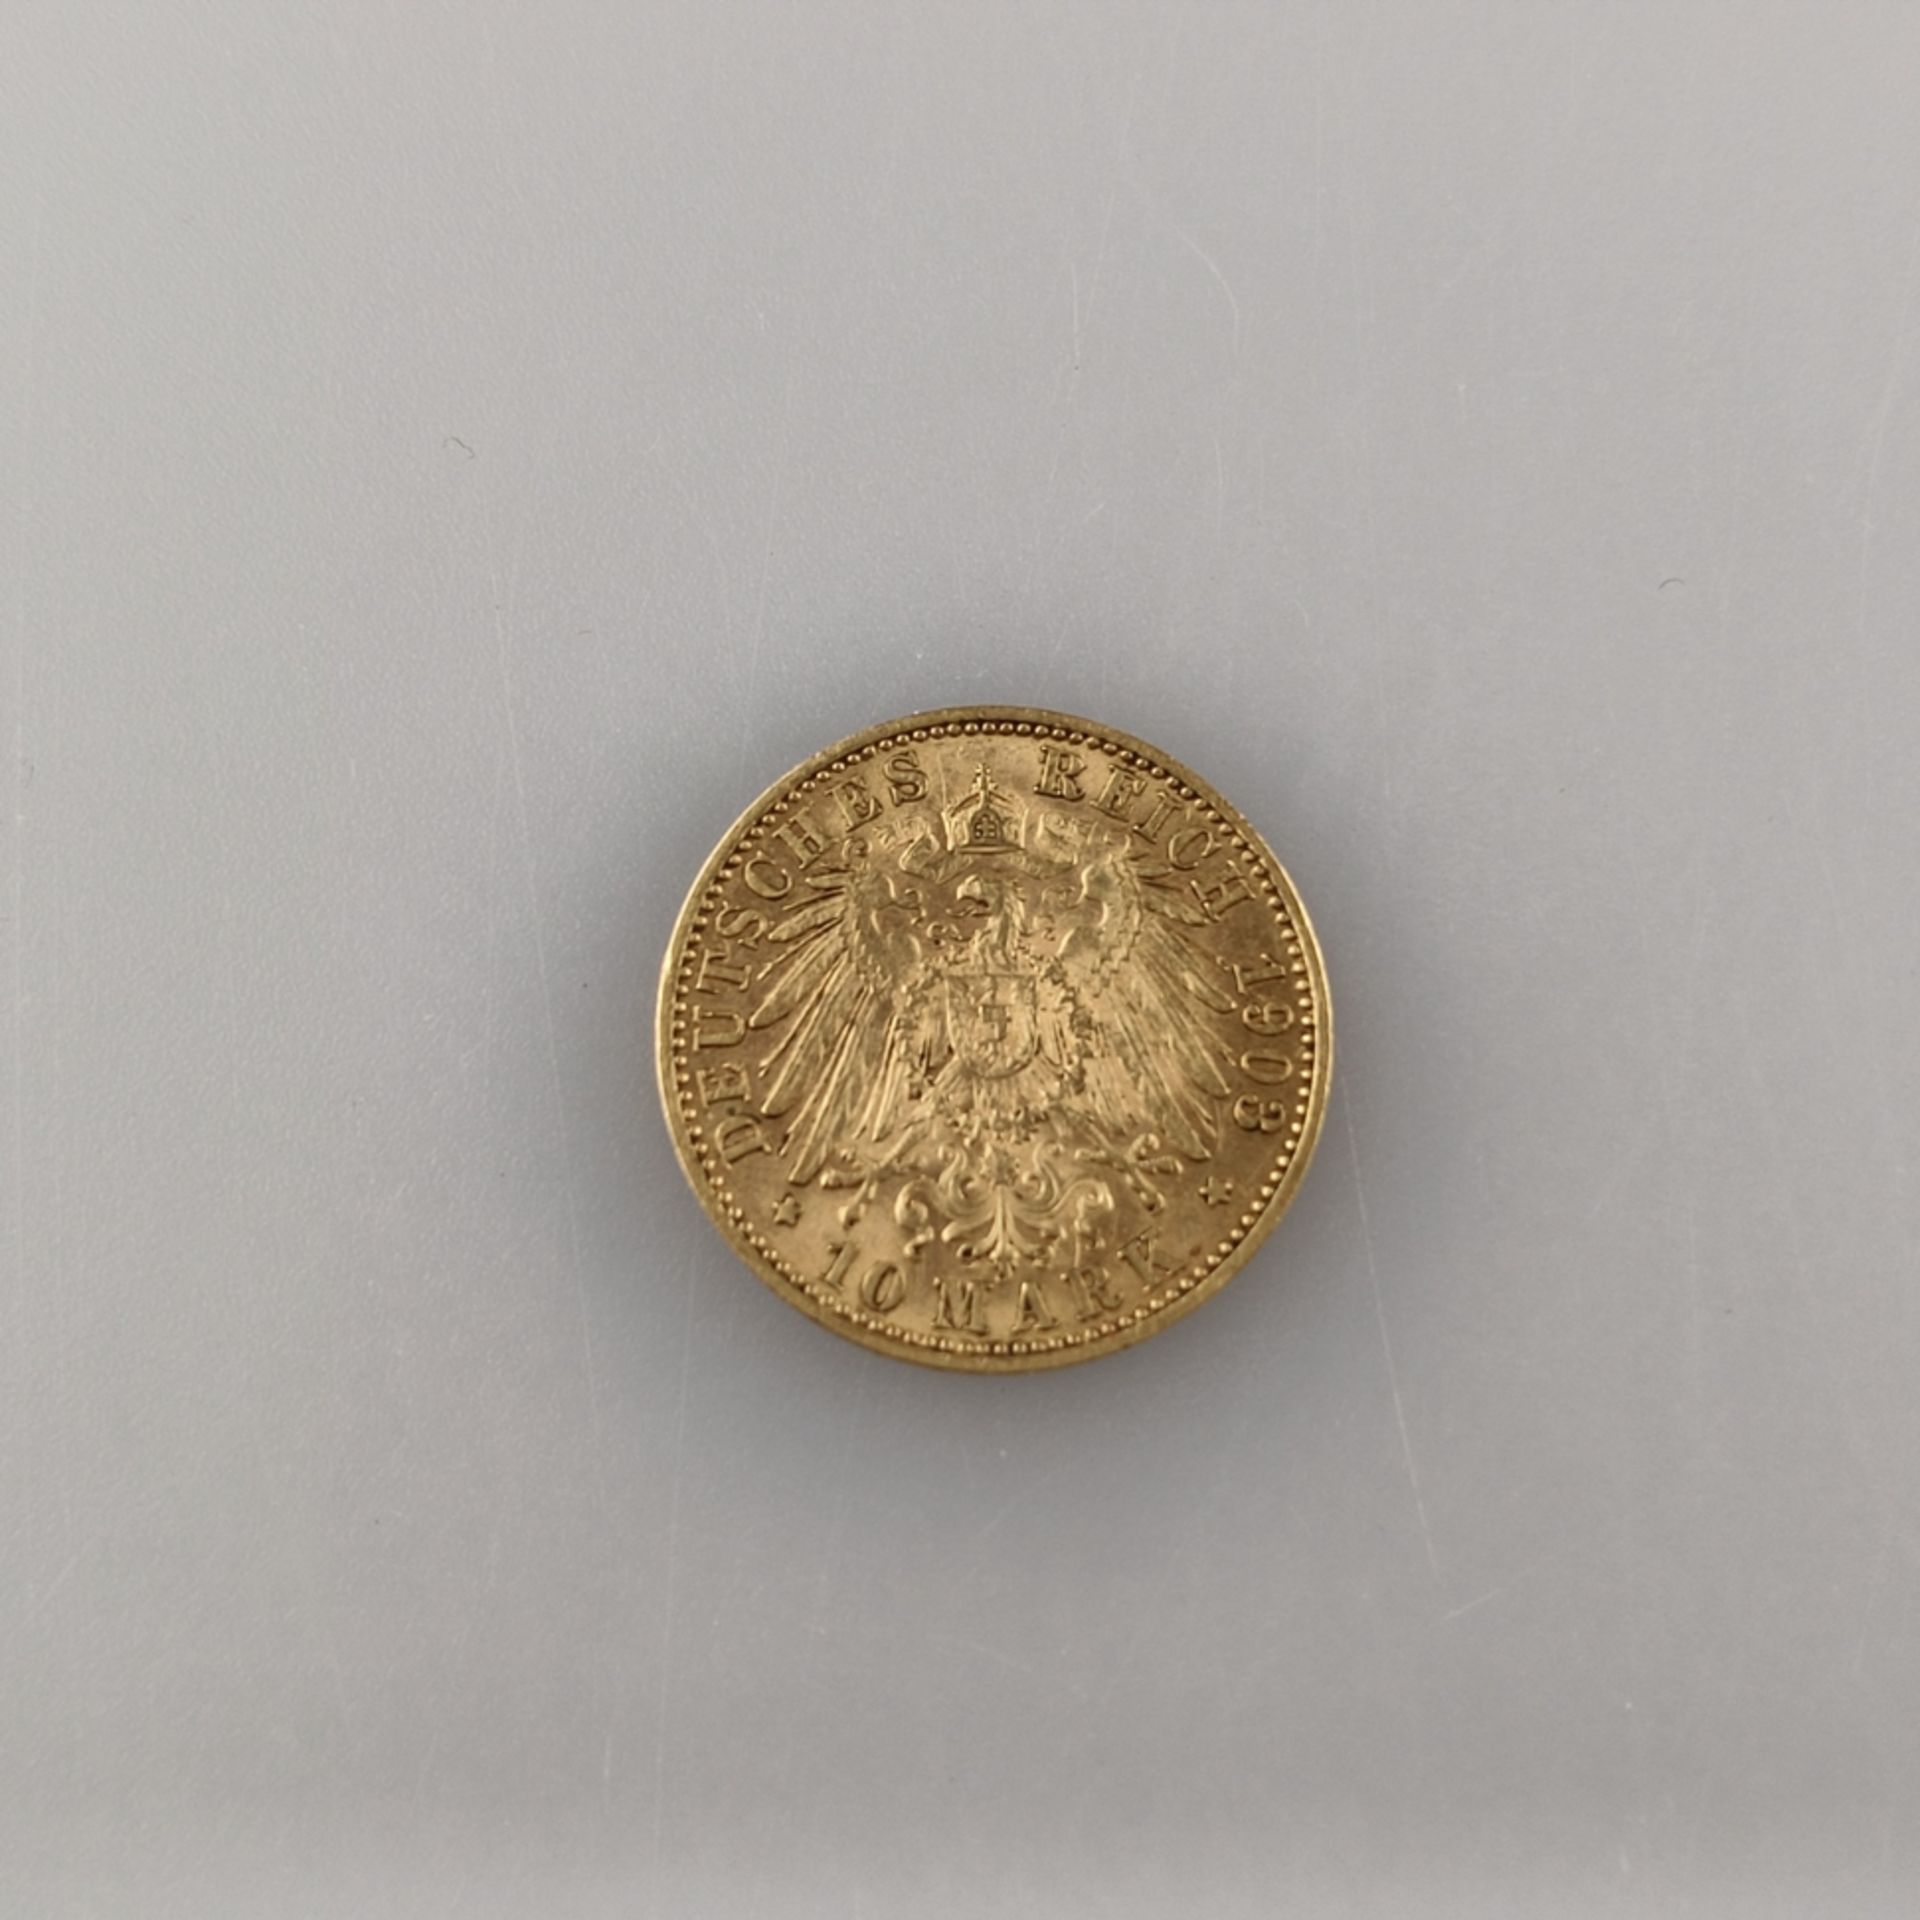 Goldmünze 10 Mark 1903 - Deutsches Kaiserreich, Wilhelm II Deutscher Kaiser König v. Preußen, 900/0 - Image 2 of 2